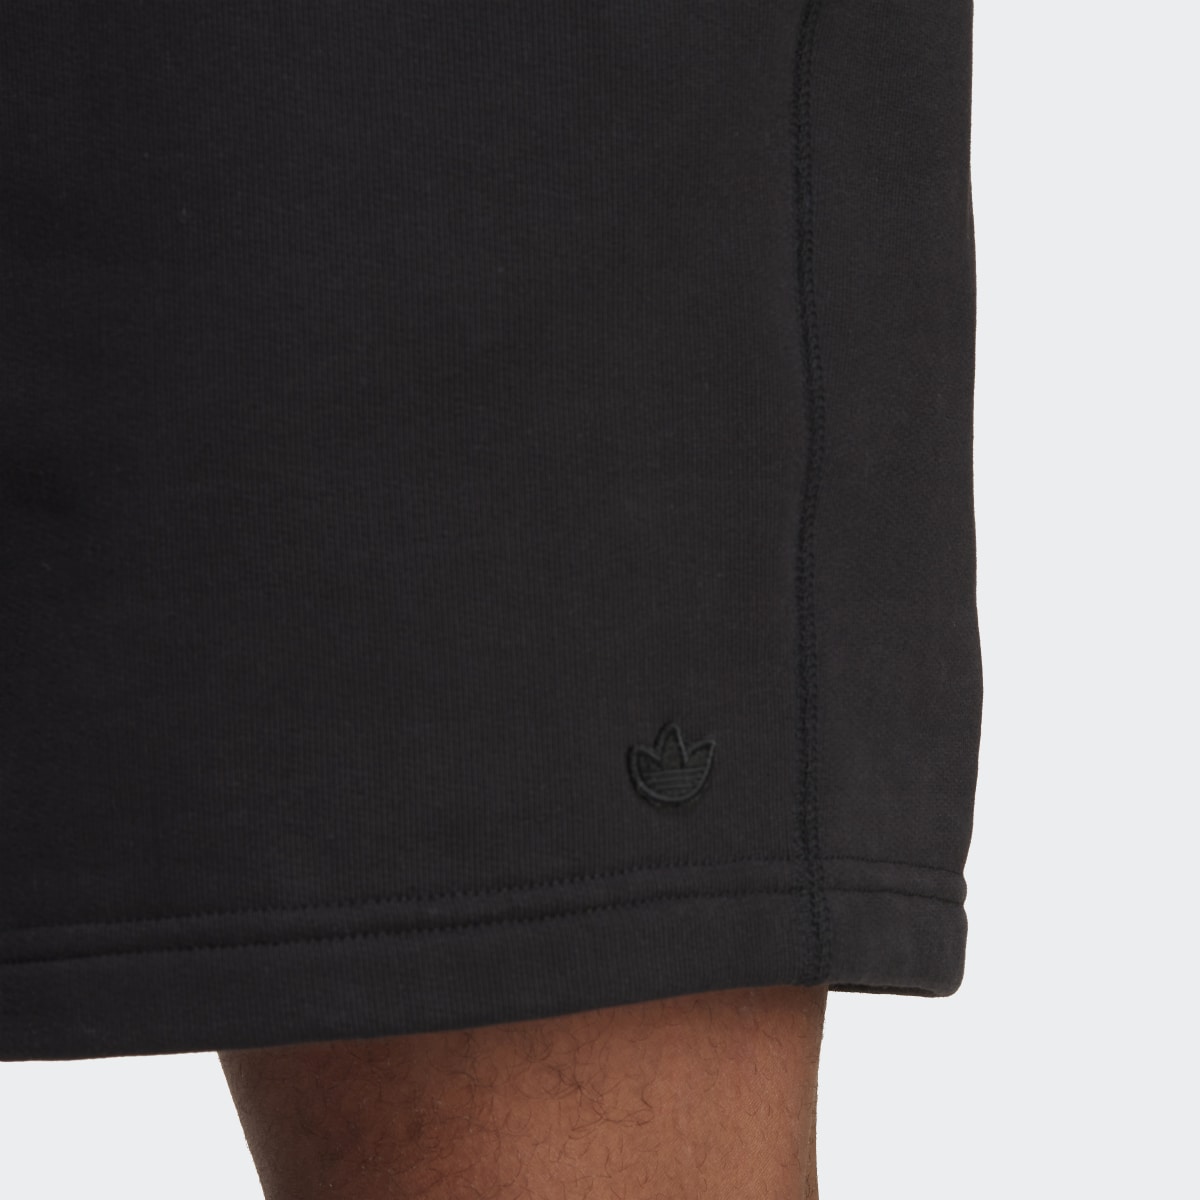 Adidas Premium Essentials Shorts. 6